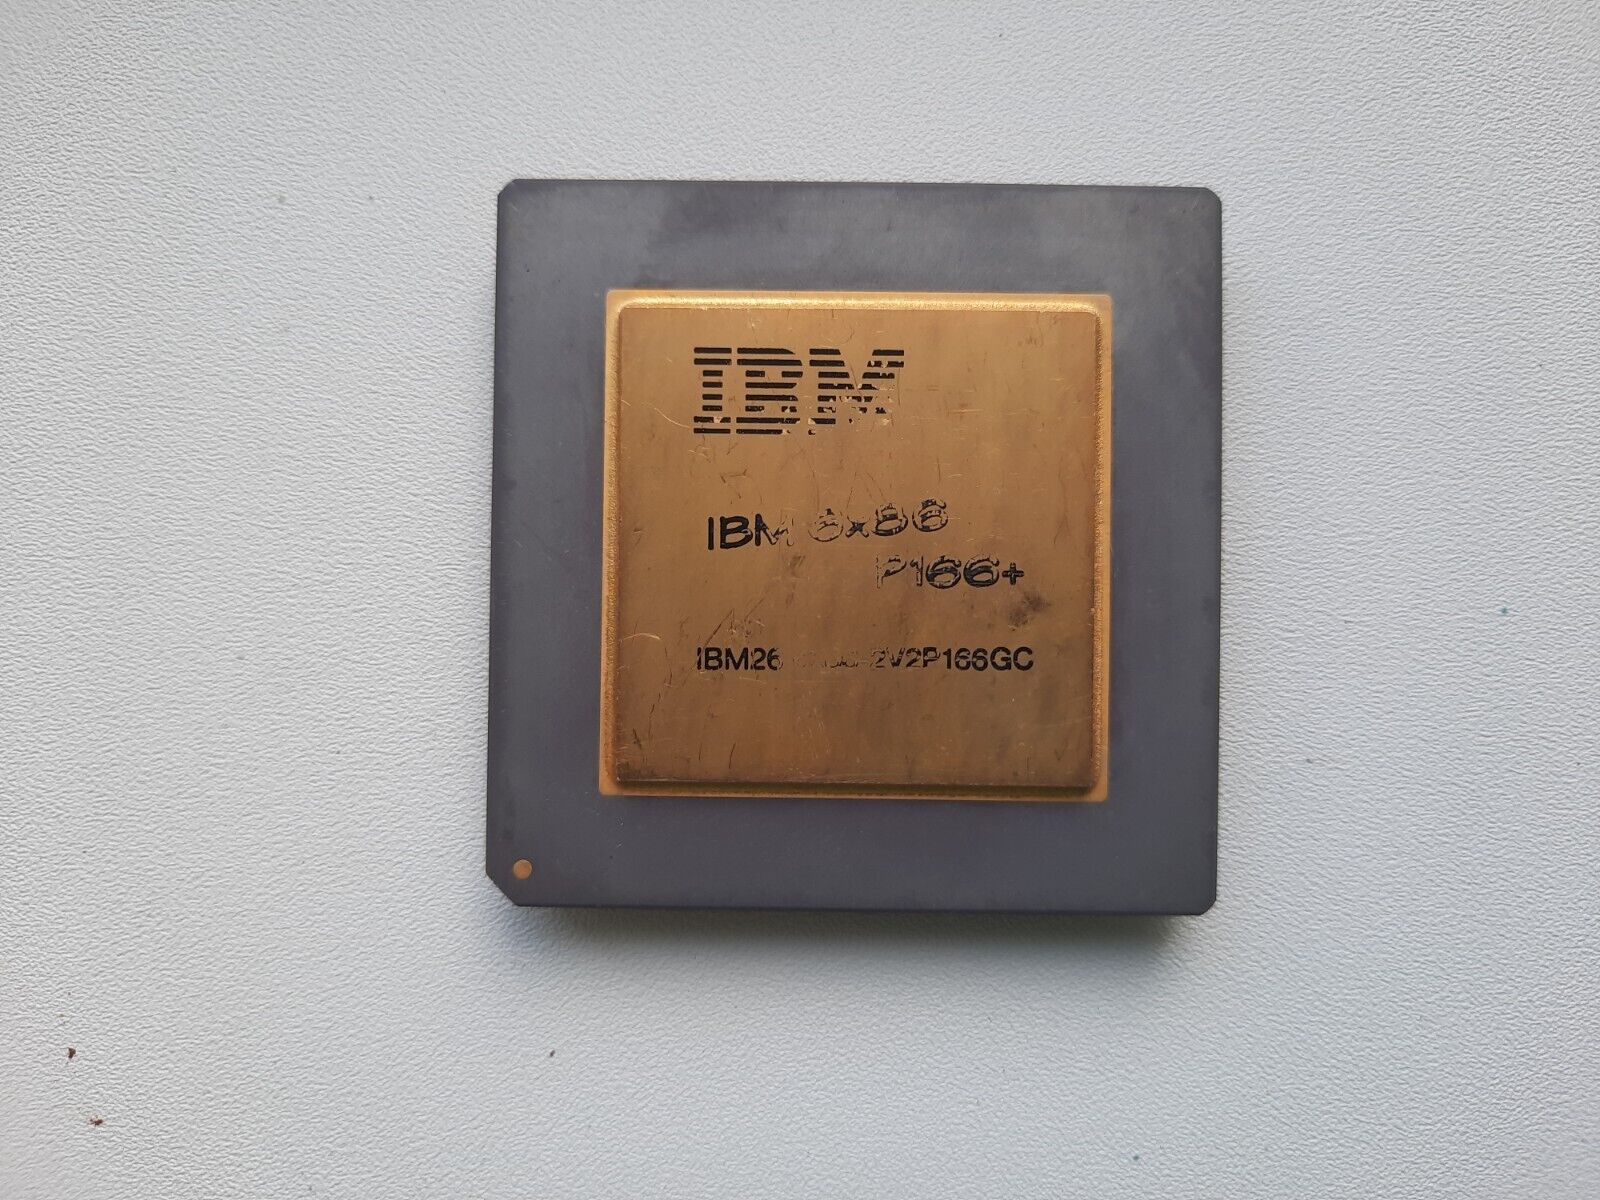 IBM 6x86 P166+ 6x86-2V2P166GC square top 6x86 vintage CPU GOLD